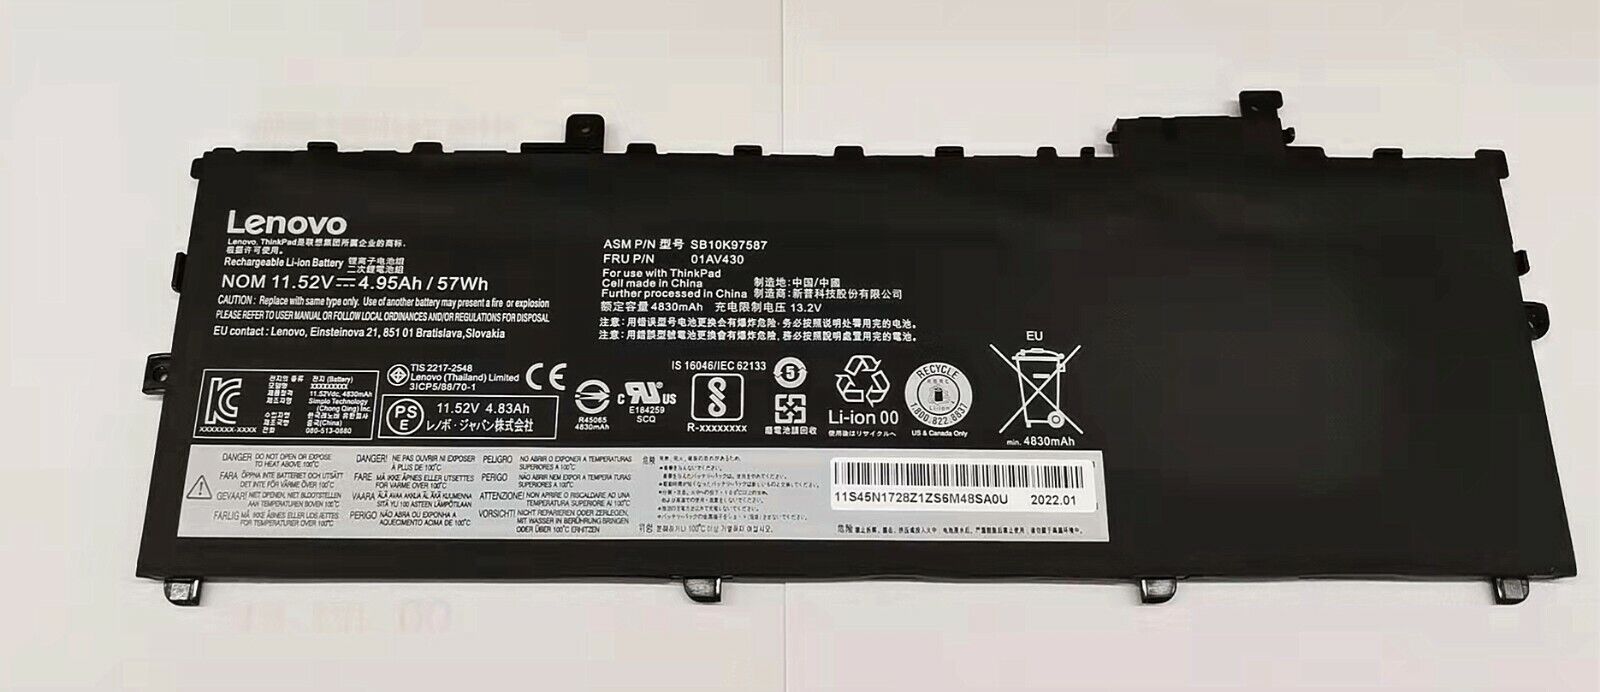 Genuine 01AV429 01AV430 01AV494 battery For Lenovo Thinkpad X1 Carbon 2017 2018